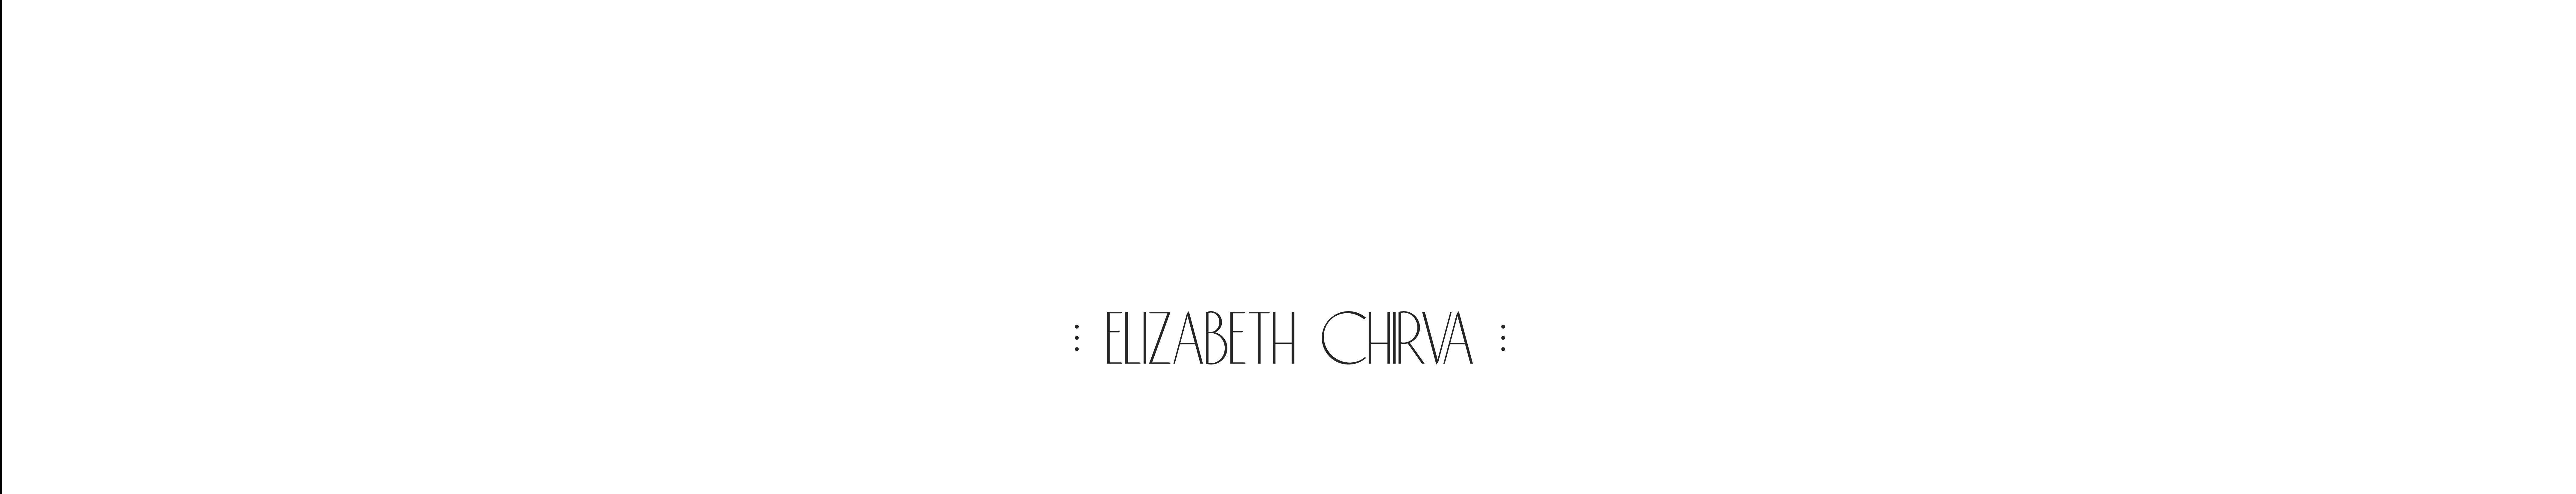 ELIZABETH CHIRVA's profile banner